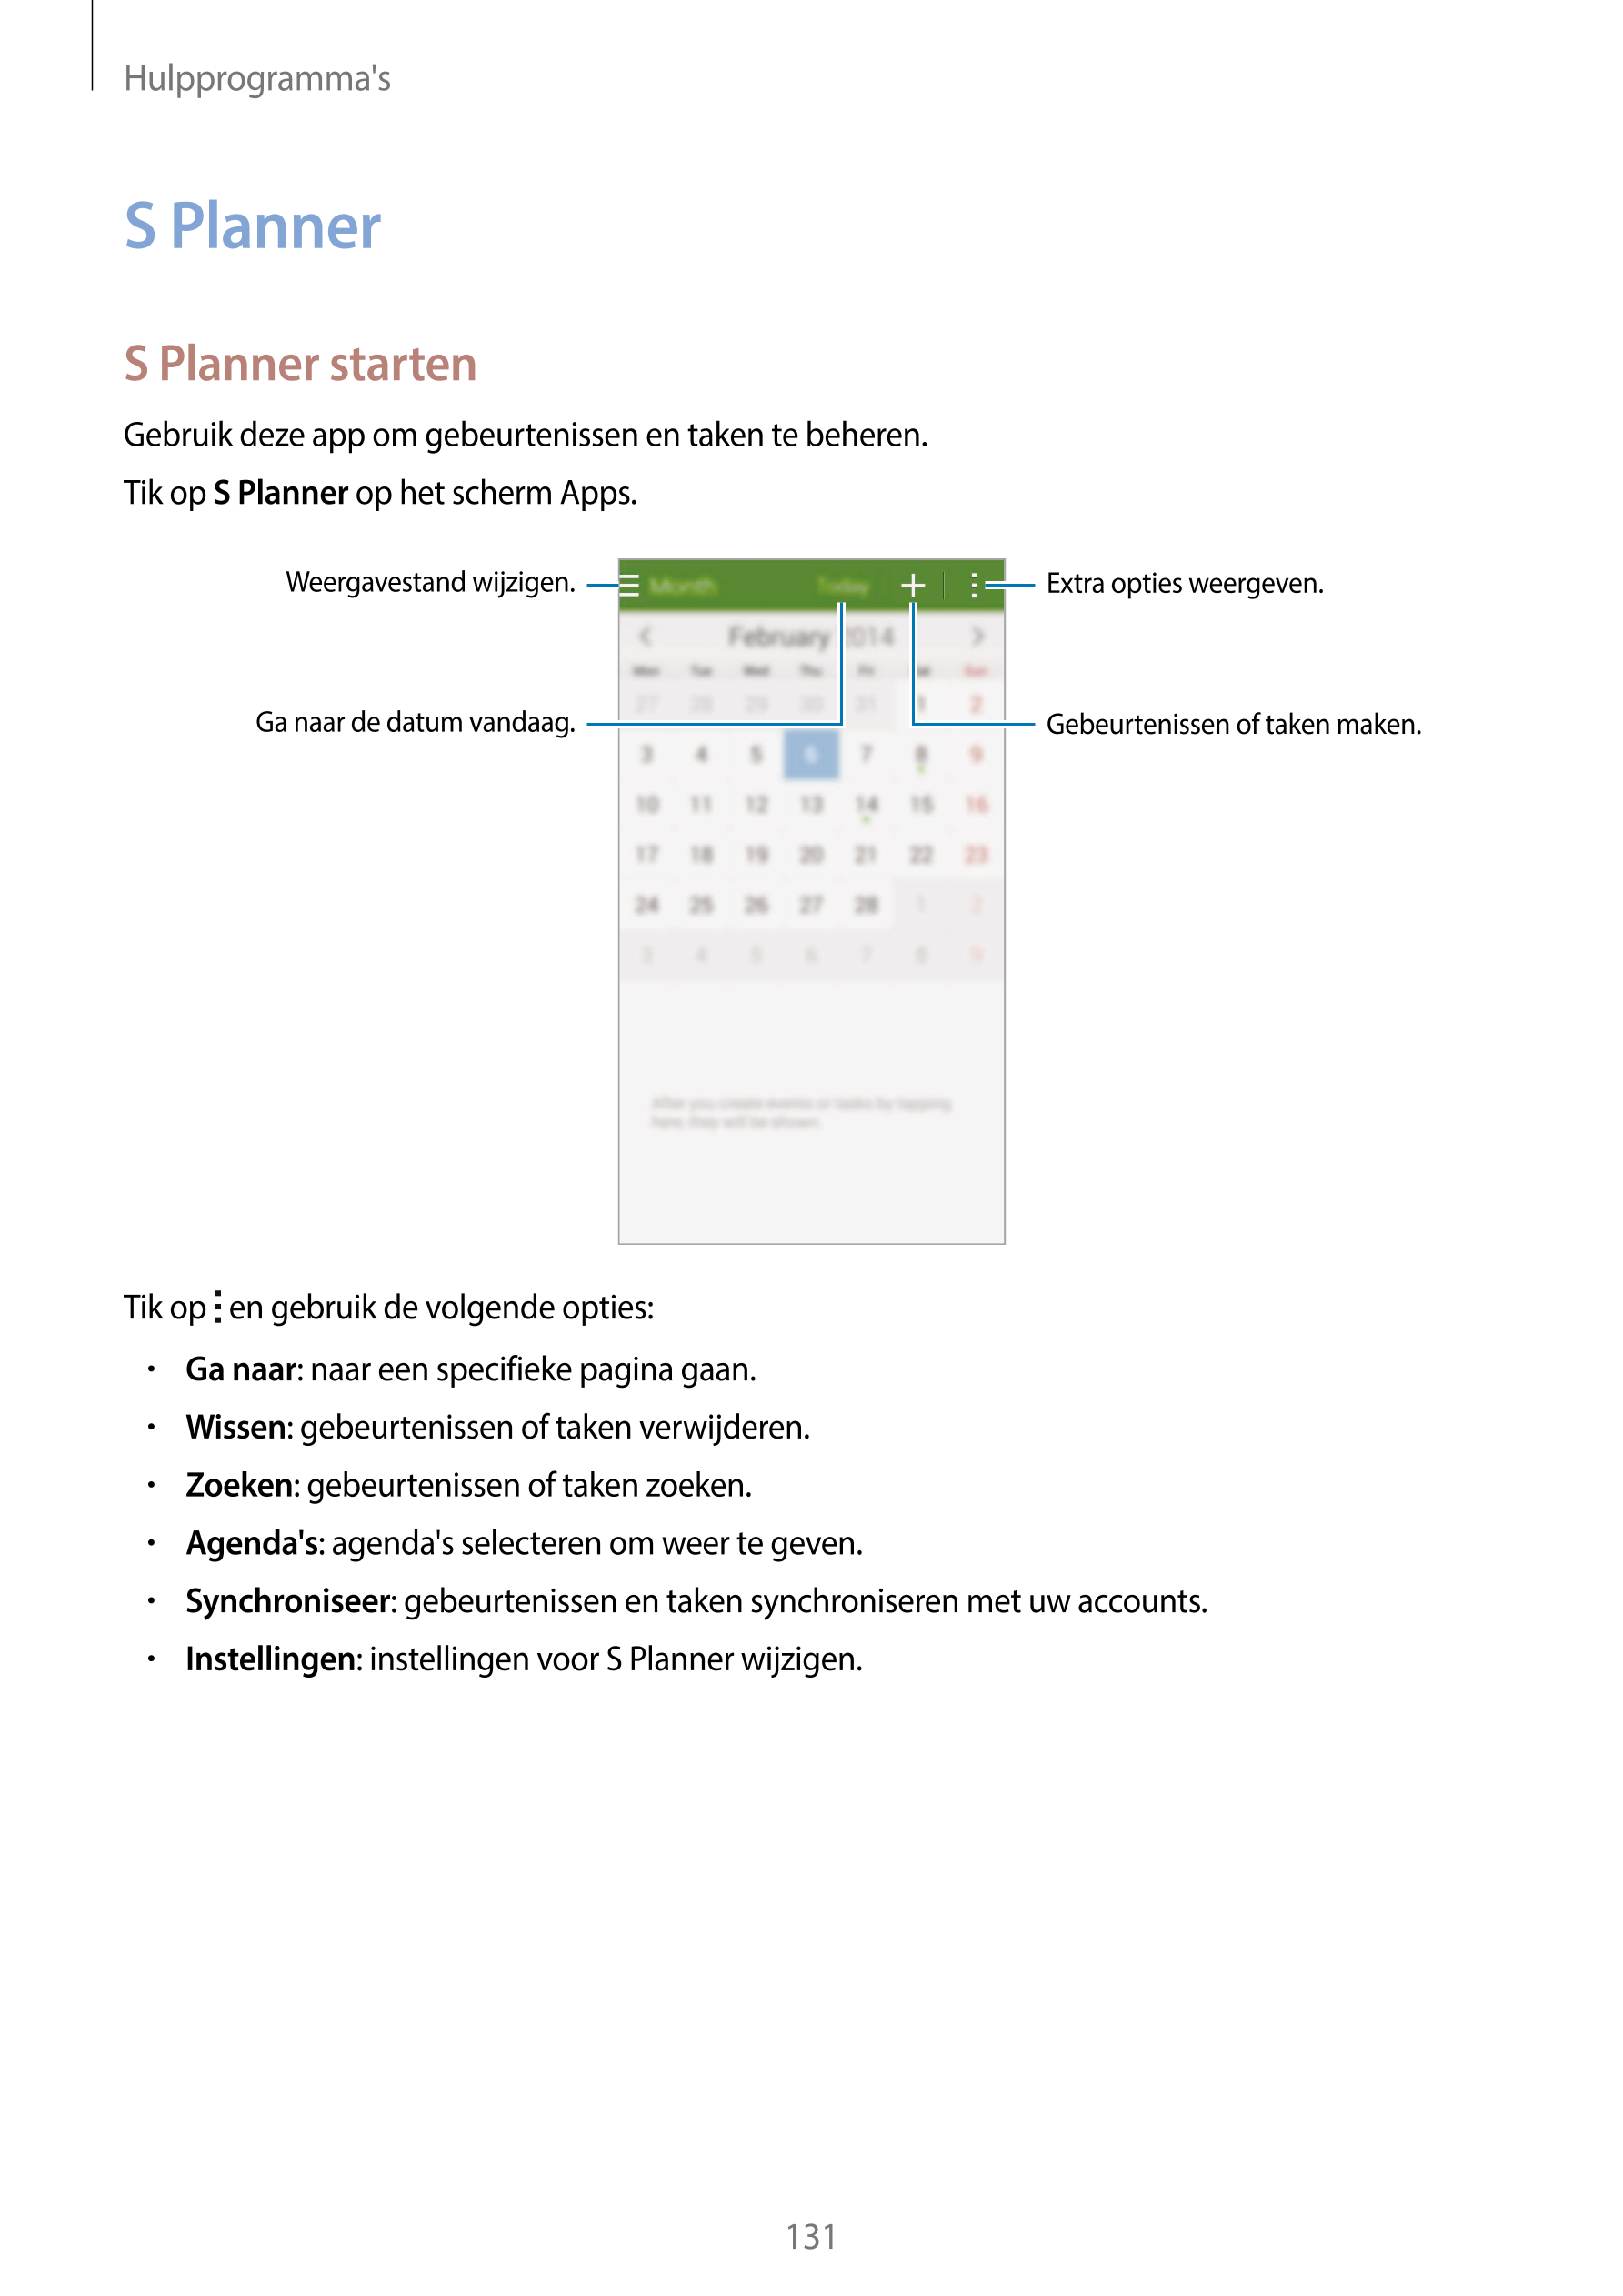 Hulpprogramma's
S Planner
S Planner starten
Gebruik deze app om gebeurtenissen en taken te beheren.
Tik op  S Planner op het sch